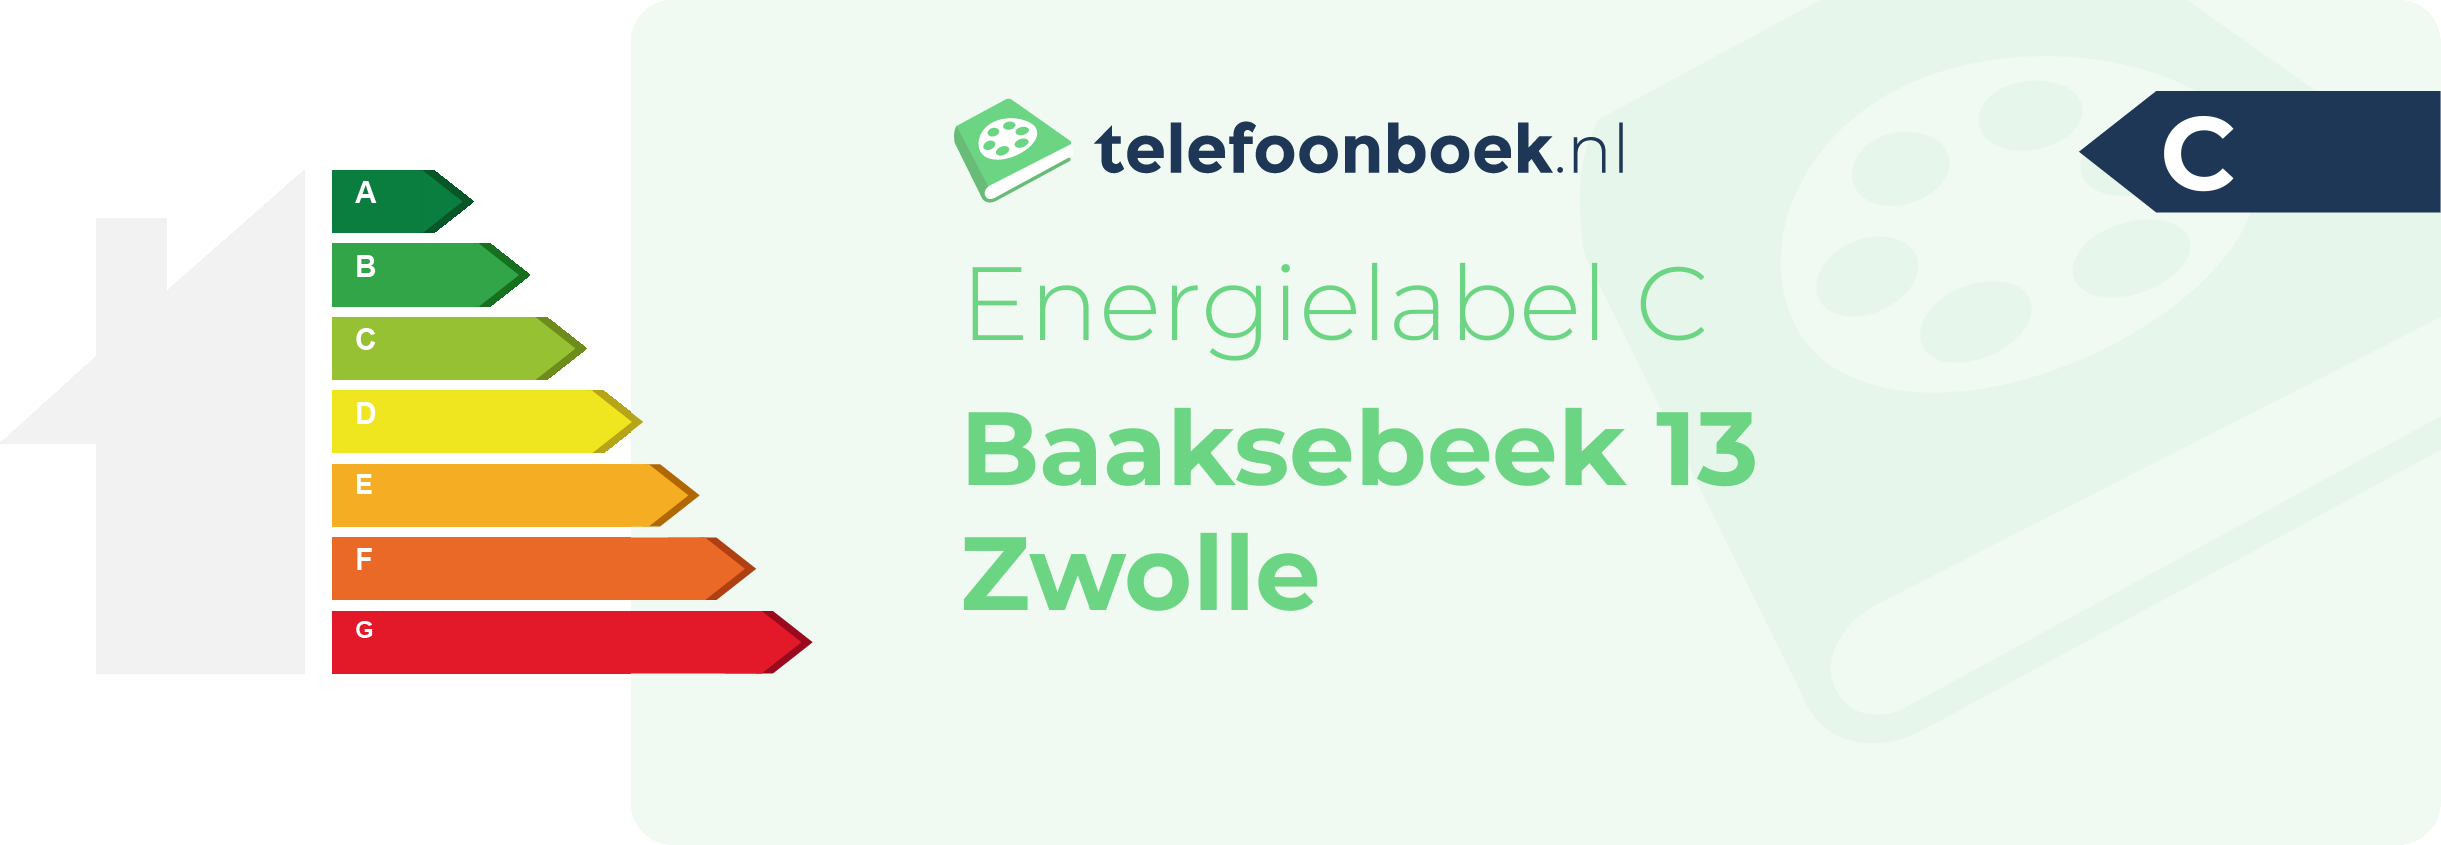 Energielabel Baaksebeek 13 Zwolle